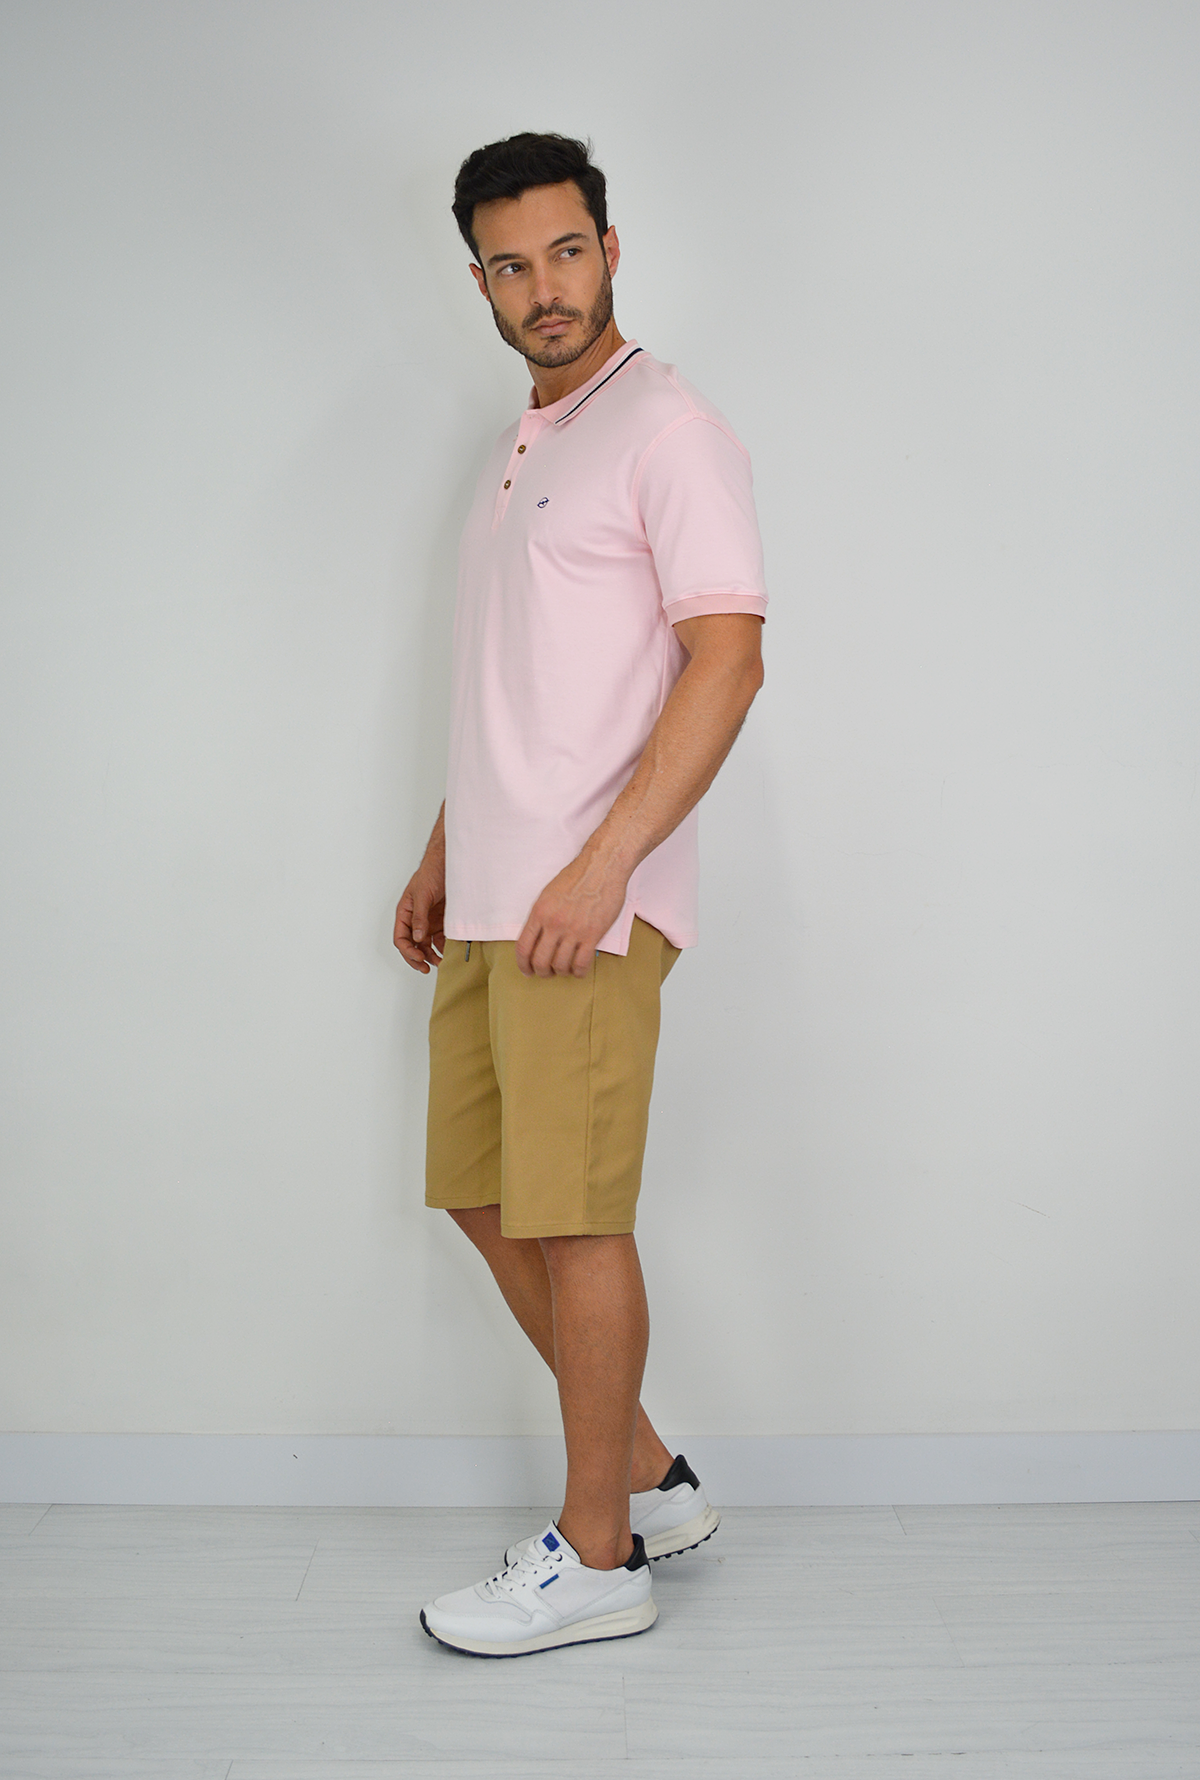 Camiseta Rosada  Tipo Polo Para Hombre DMM05